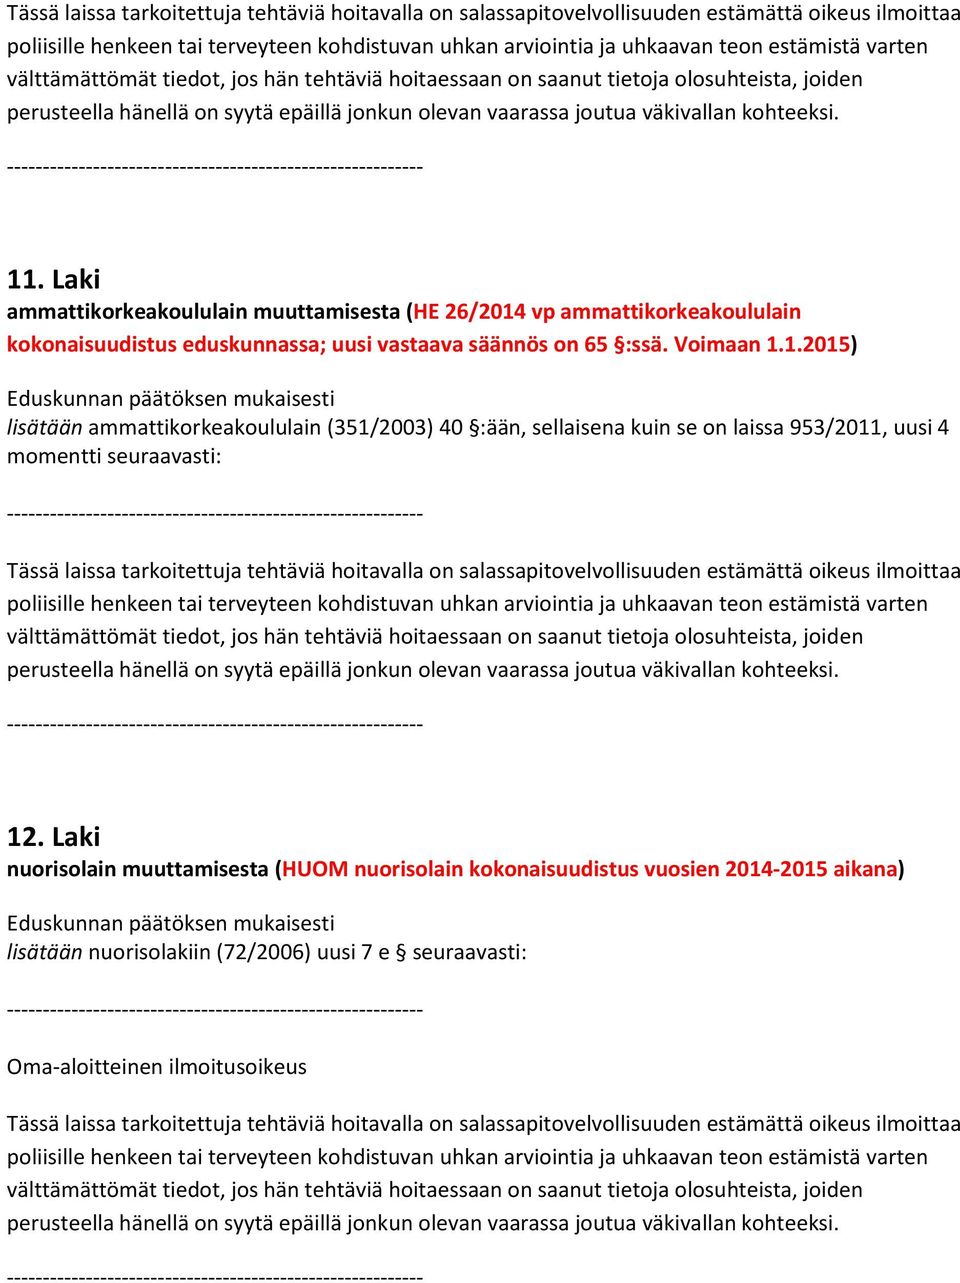 Laki ammattikorkeakoululain muuttamisesta (HE 26/2014